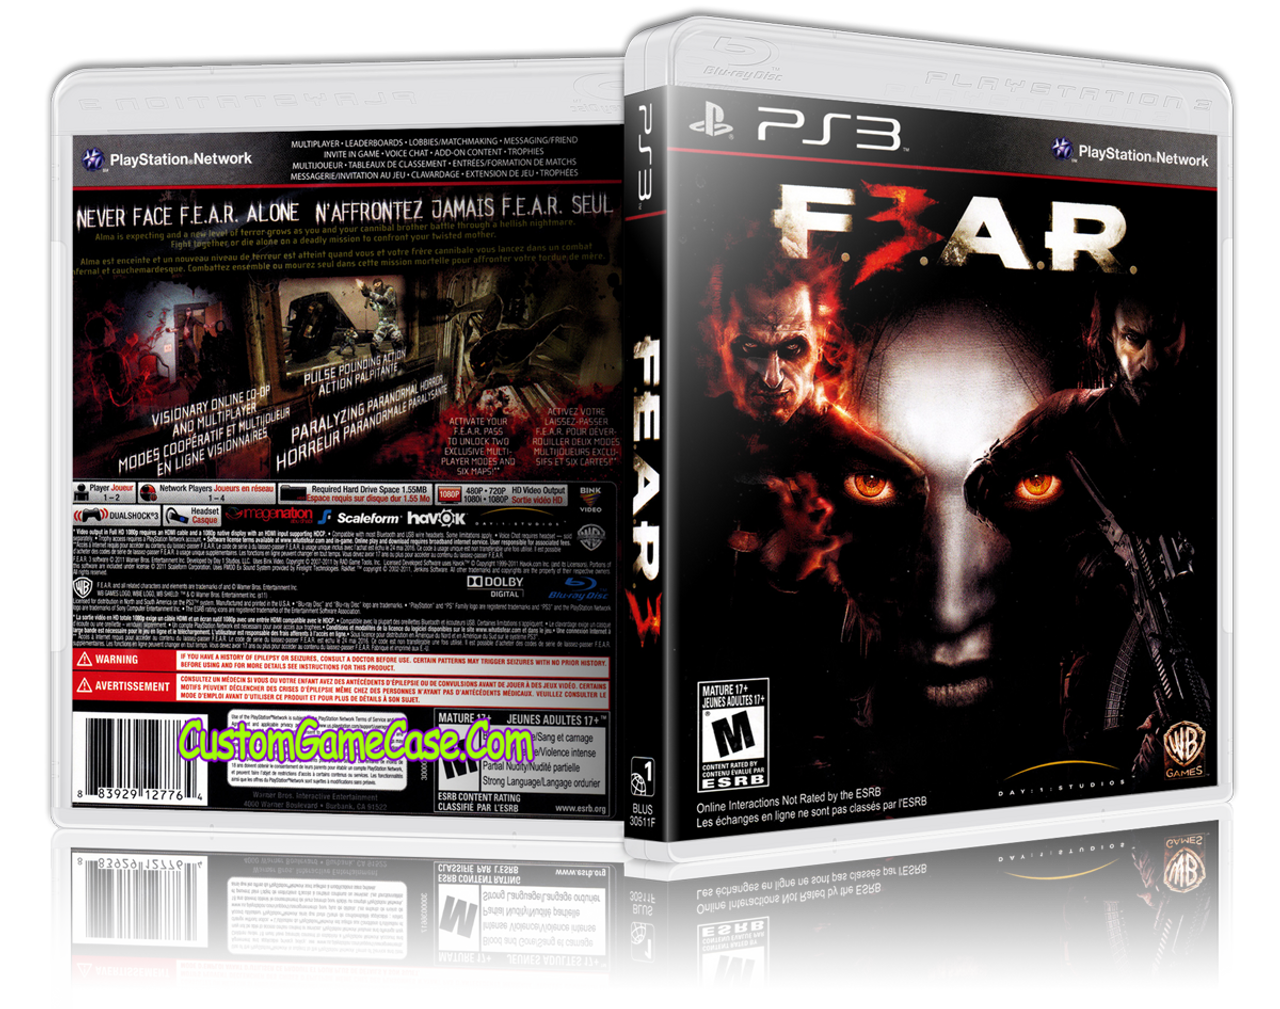 FEAR 3 - Playstation 3